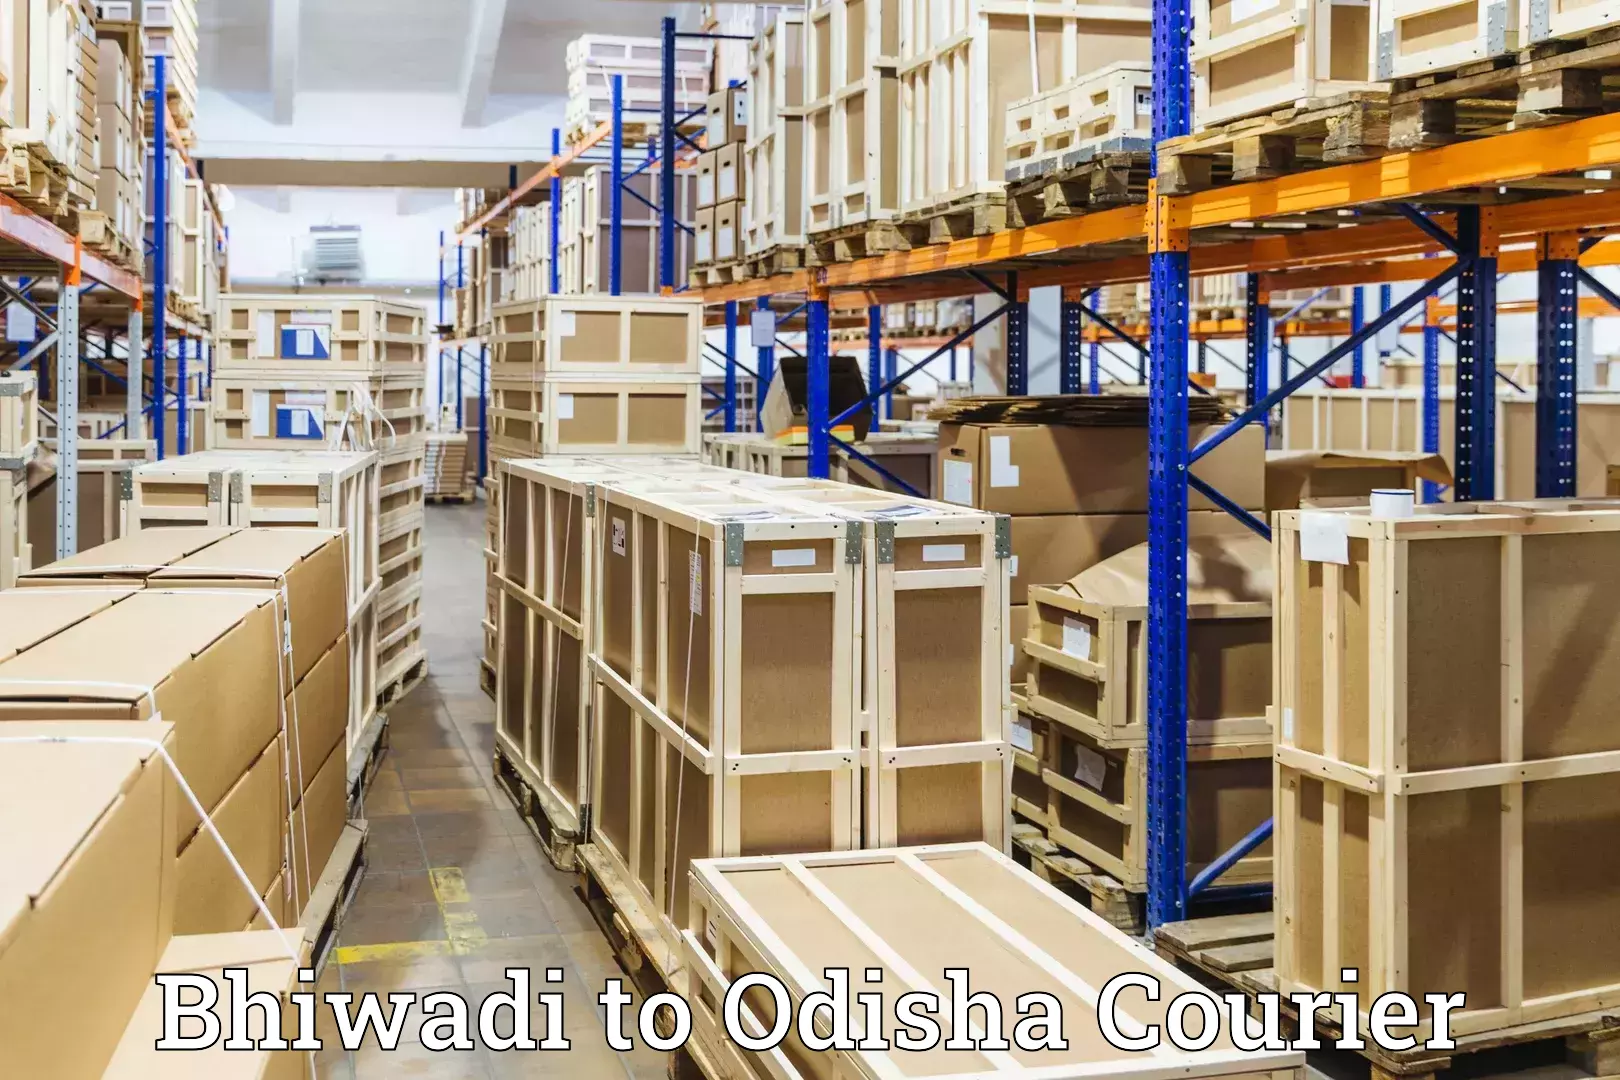 Luggage transport operations Bhiwadi to Odisha